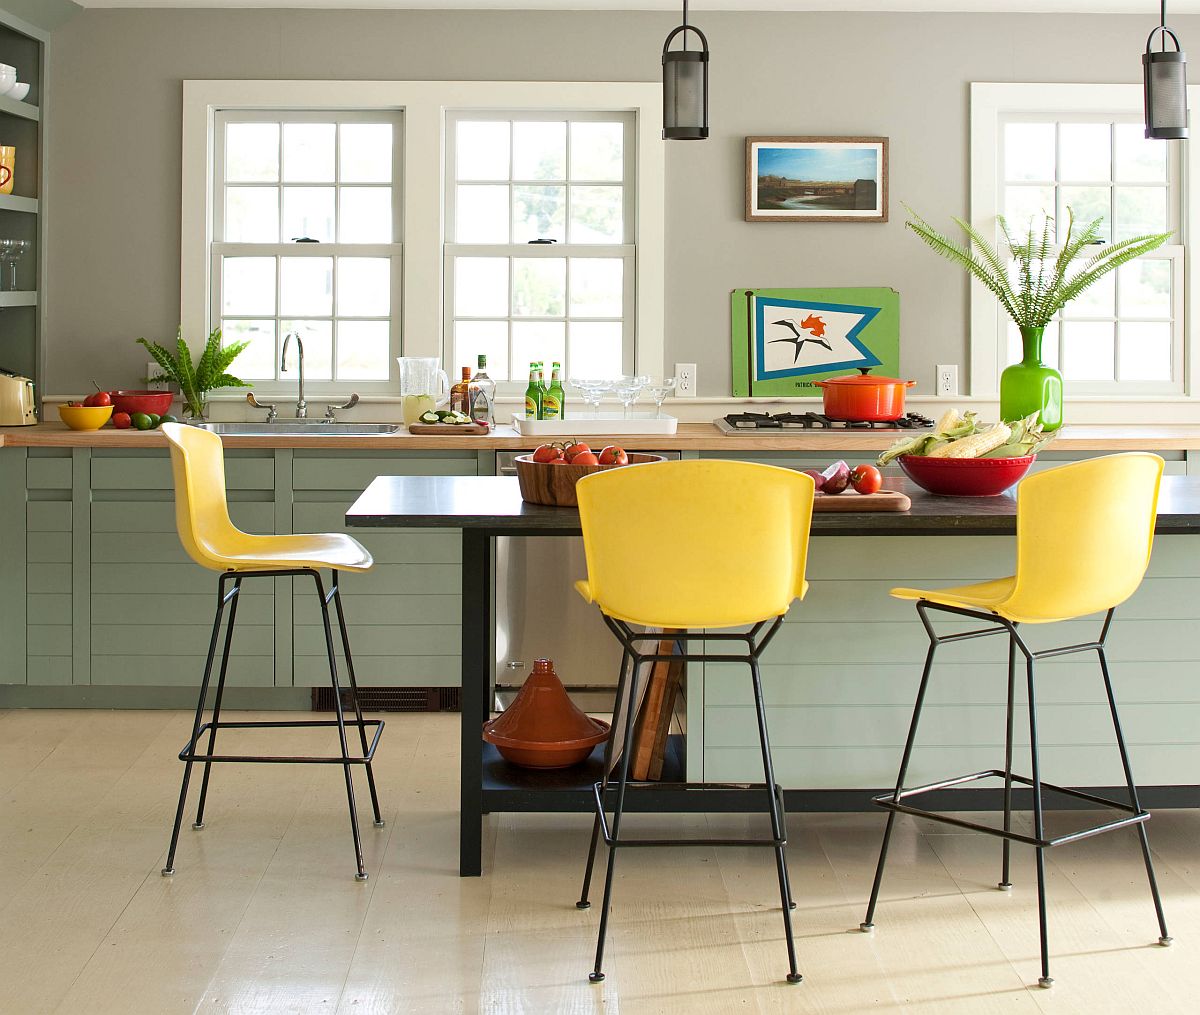 Nếu bạn trót yêu màu vàng - xanh nhưng lại không có nhiều thời gian và tài chính để sơn mới bức tường hay nội thất thì có thể áp dụng ý tưởng này. Những chiếc ghế màu vàng, lọ hoa hay tranh dán tường màu xanh lá - chỉ đơn giản vậy thôi cũng đủ cho không gian nổi bật.